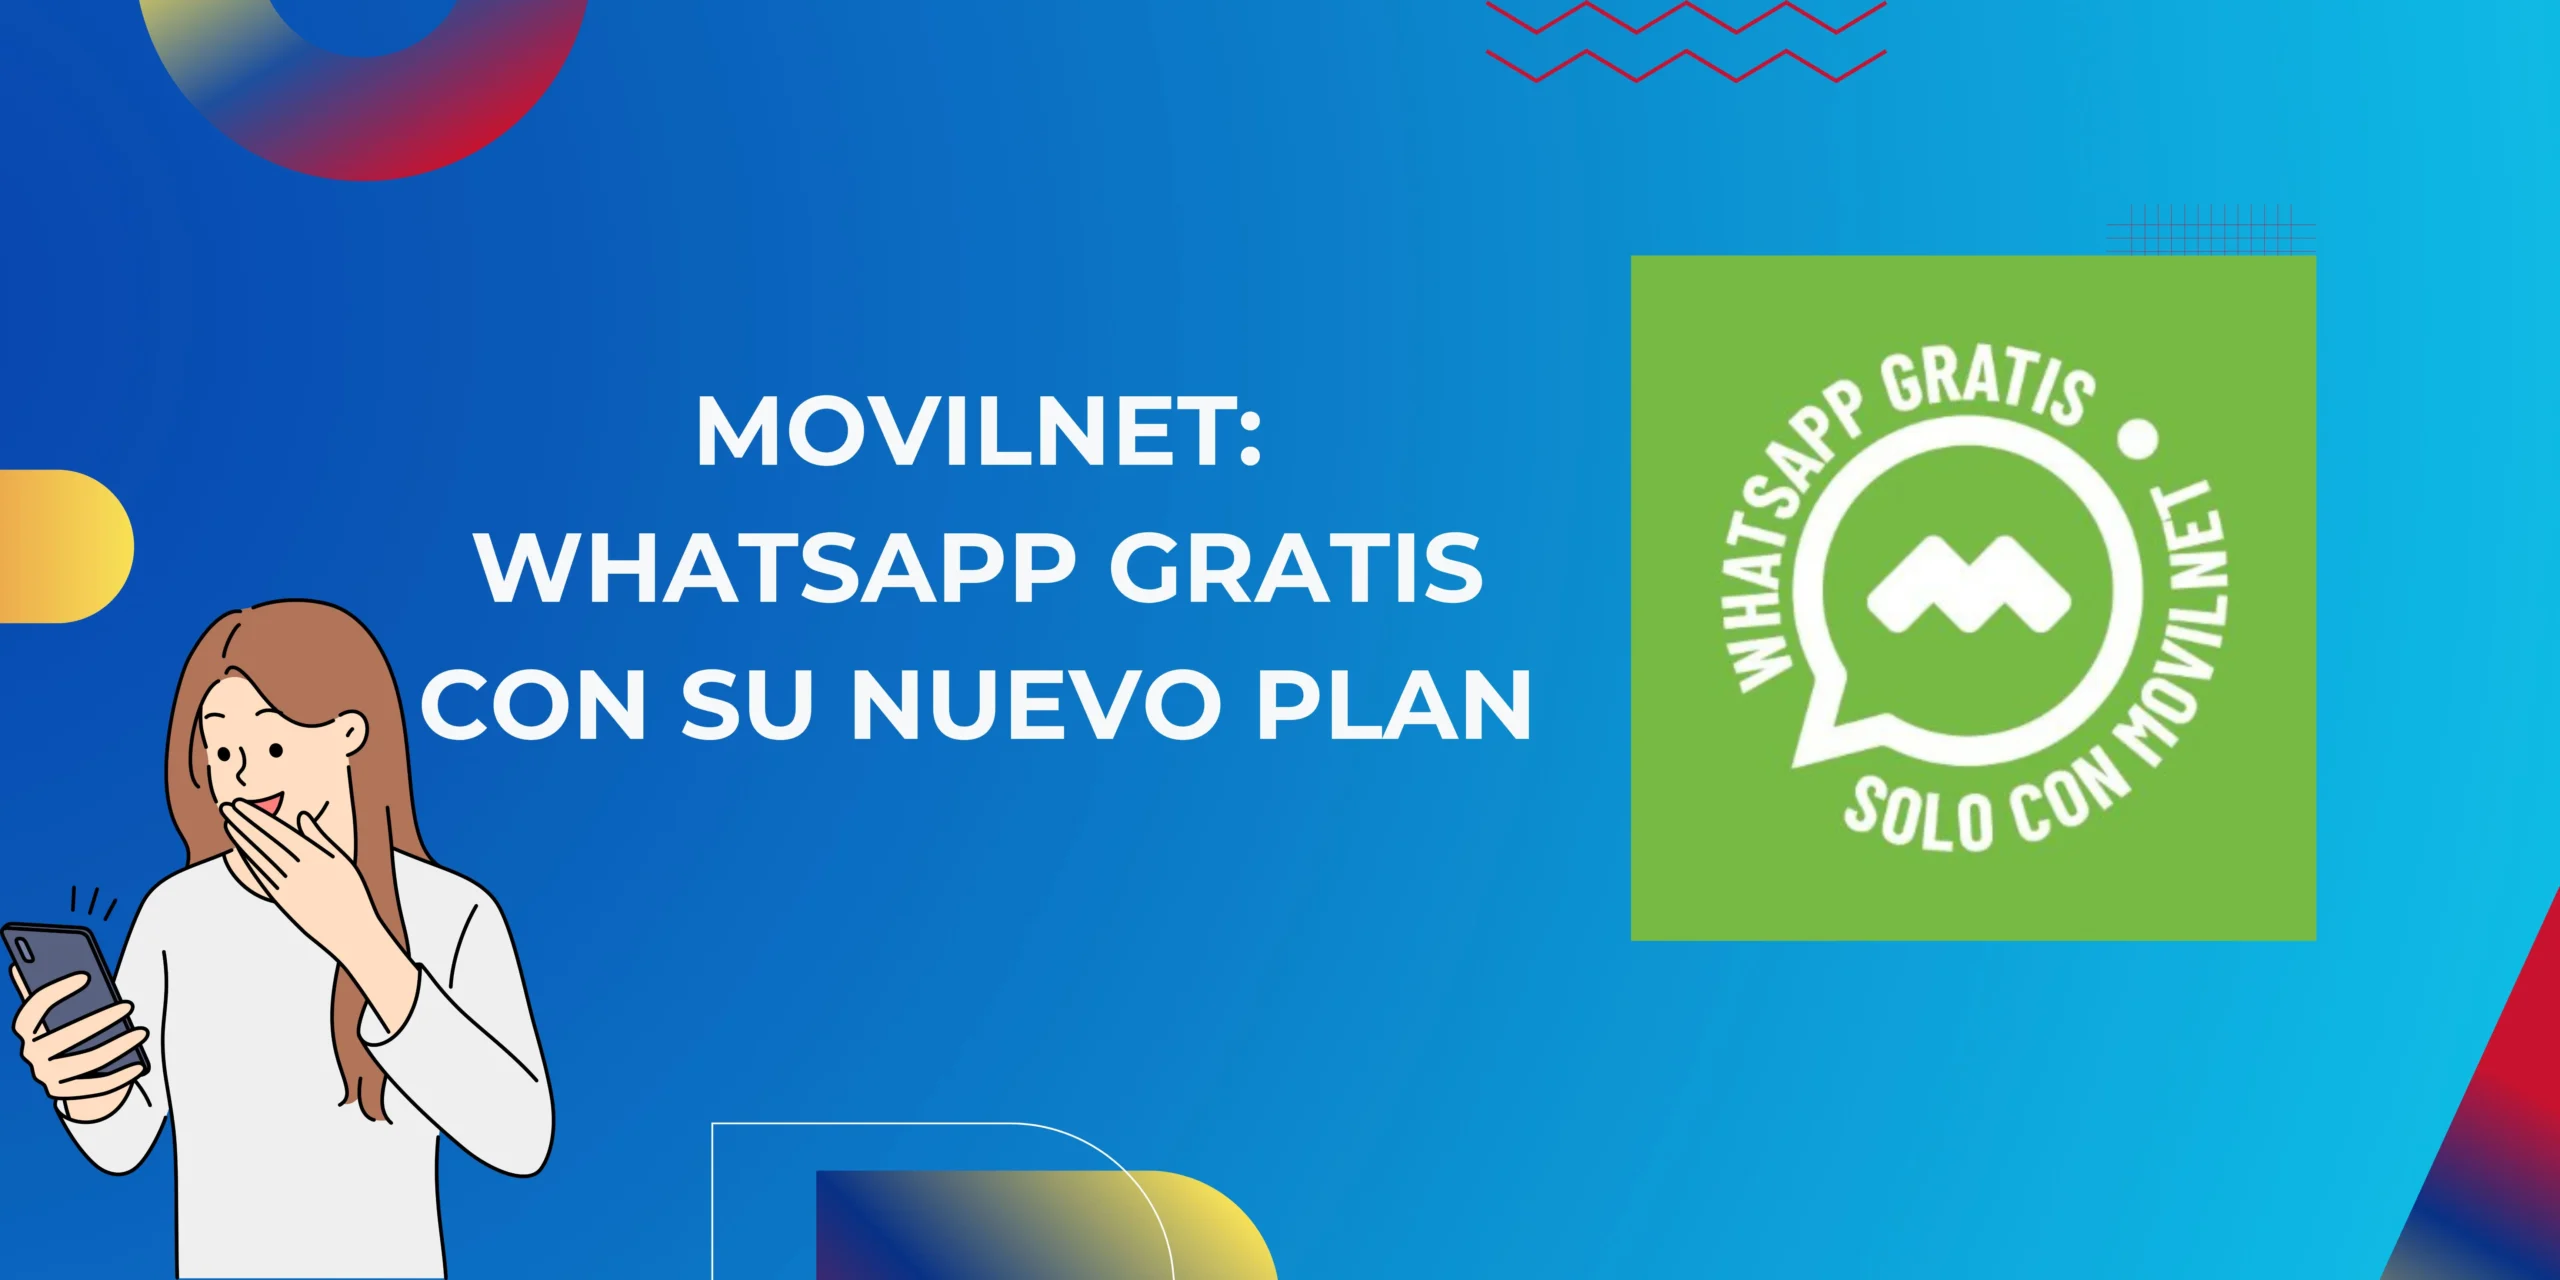 movilnet cuenta con plan de WhatsApp gratis